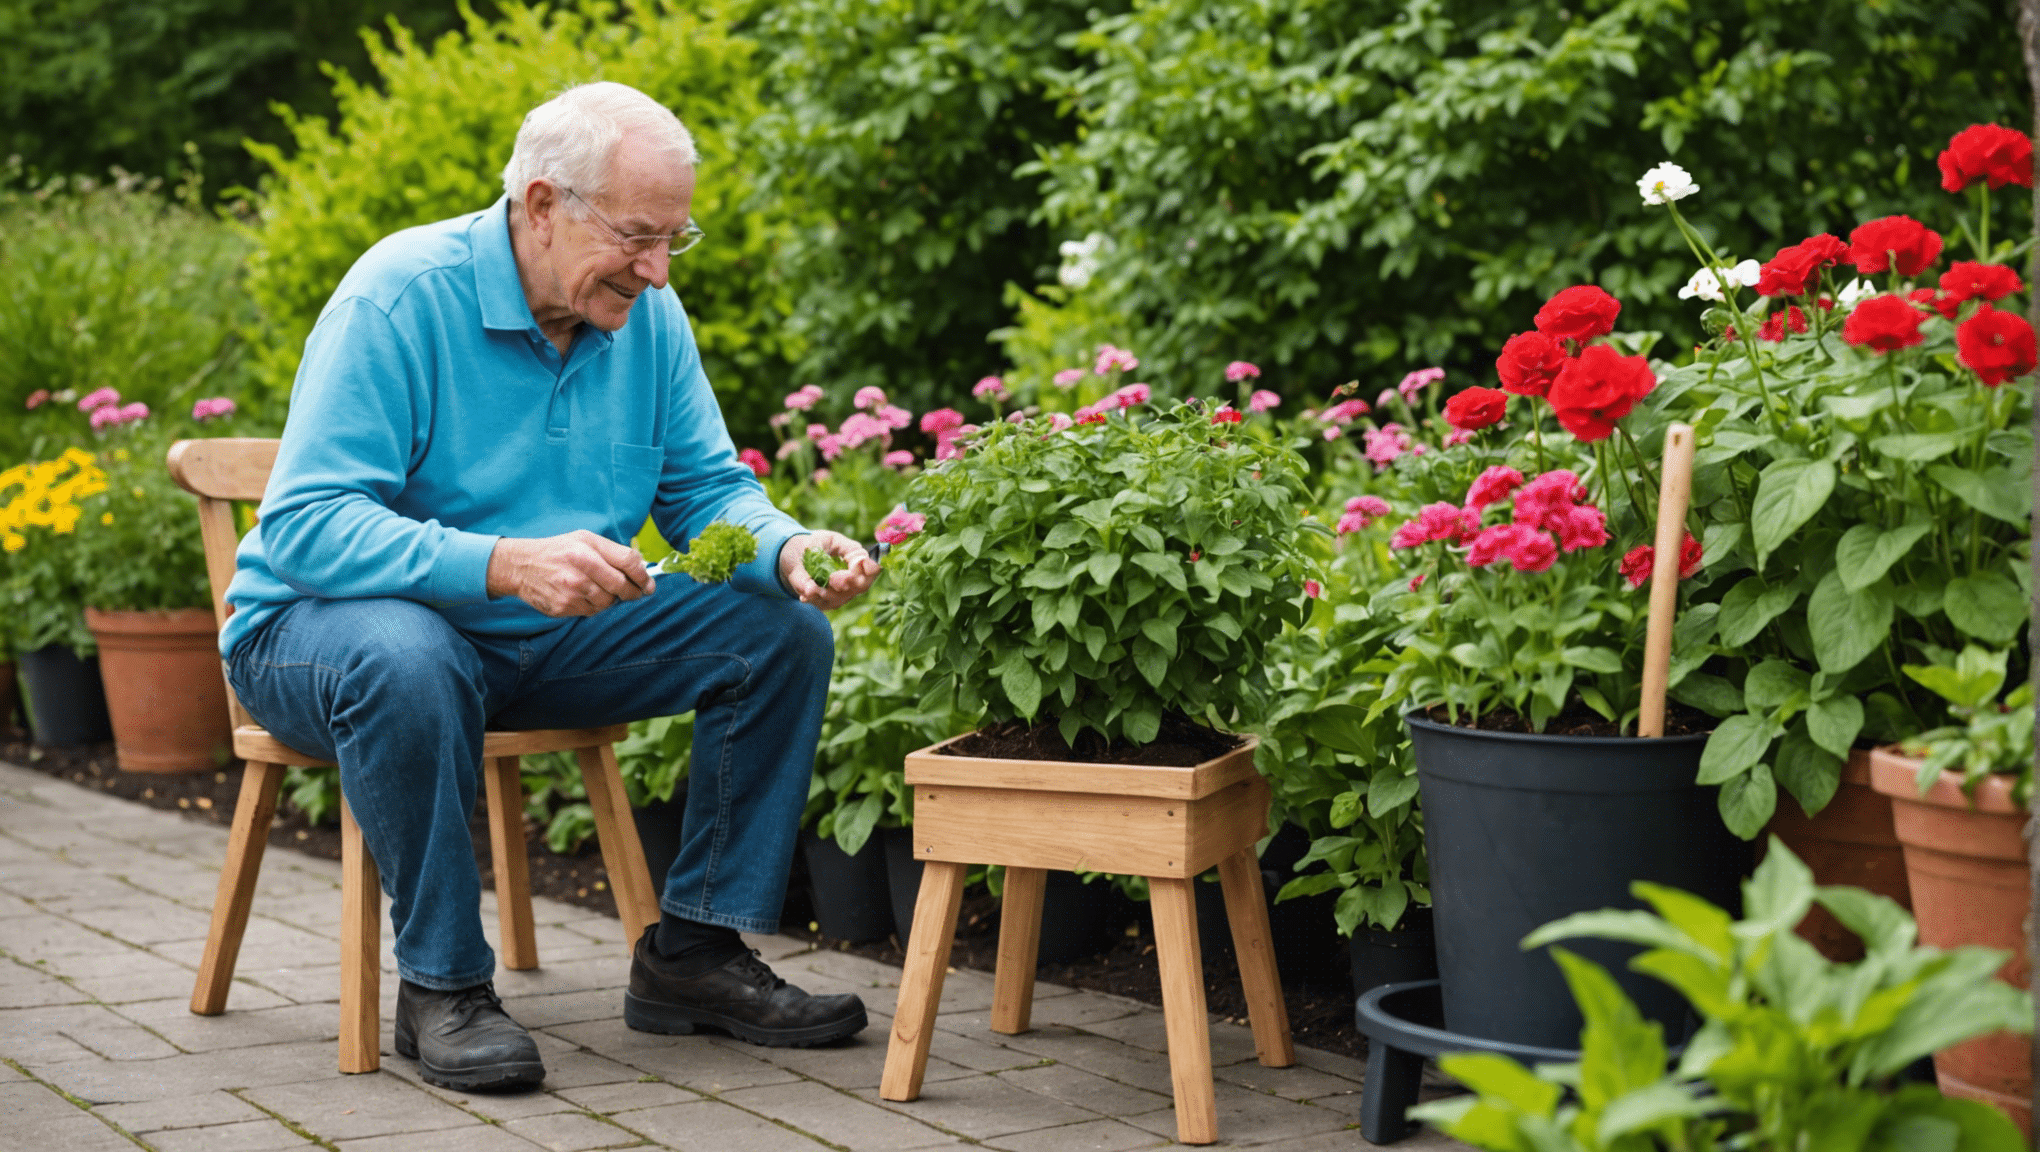 Entdecken Sie die Vorteile von Gartenhockern für Senioren, einschließlich verbessertem Komfort, Zugänglichkeit und Benutzerfreundlichkeit. Finden Sie heraus, wie Gartenhocker die Gartenarbeit für ältere Menschen angenehmer und leichter zu bewältigen machen können.